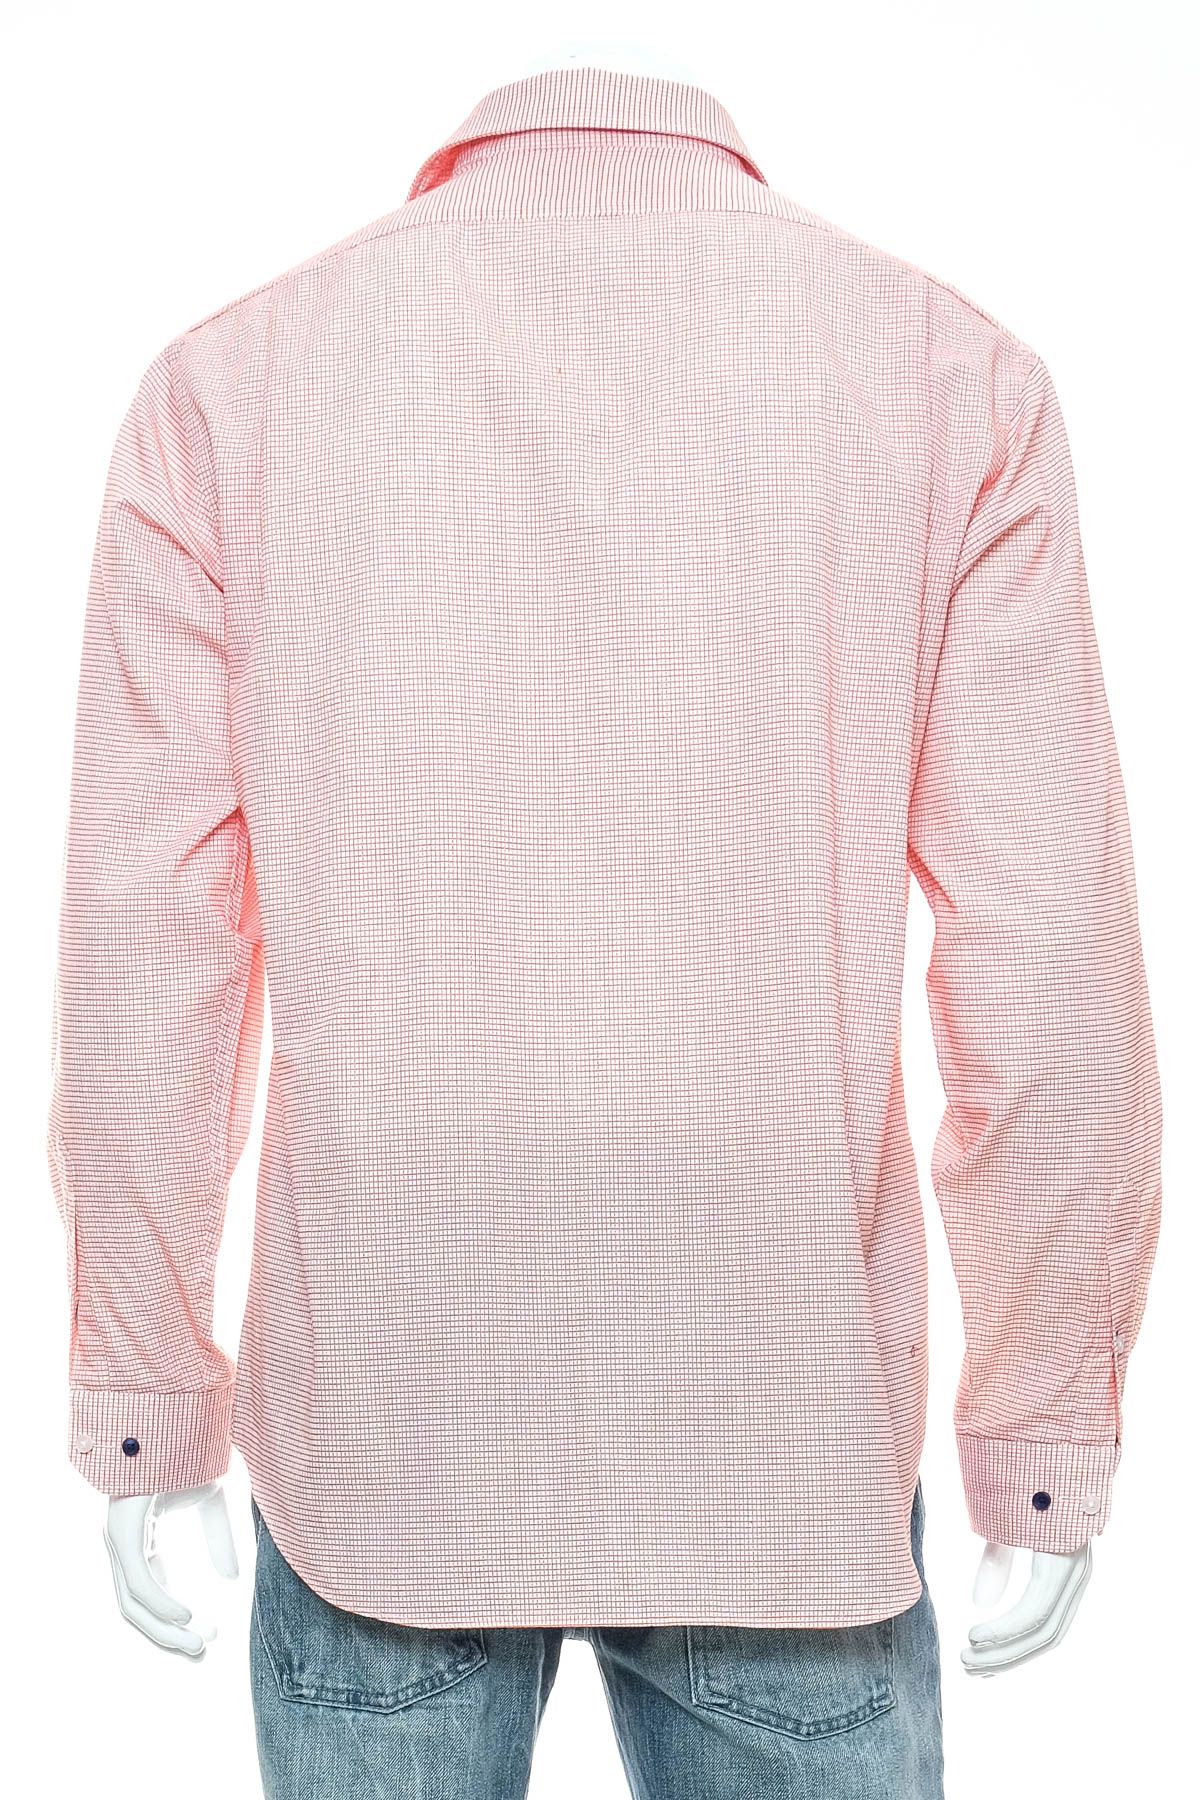 Ανδρικό πουκάμισο - Van Heusen - 1